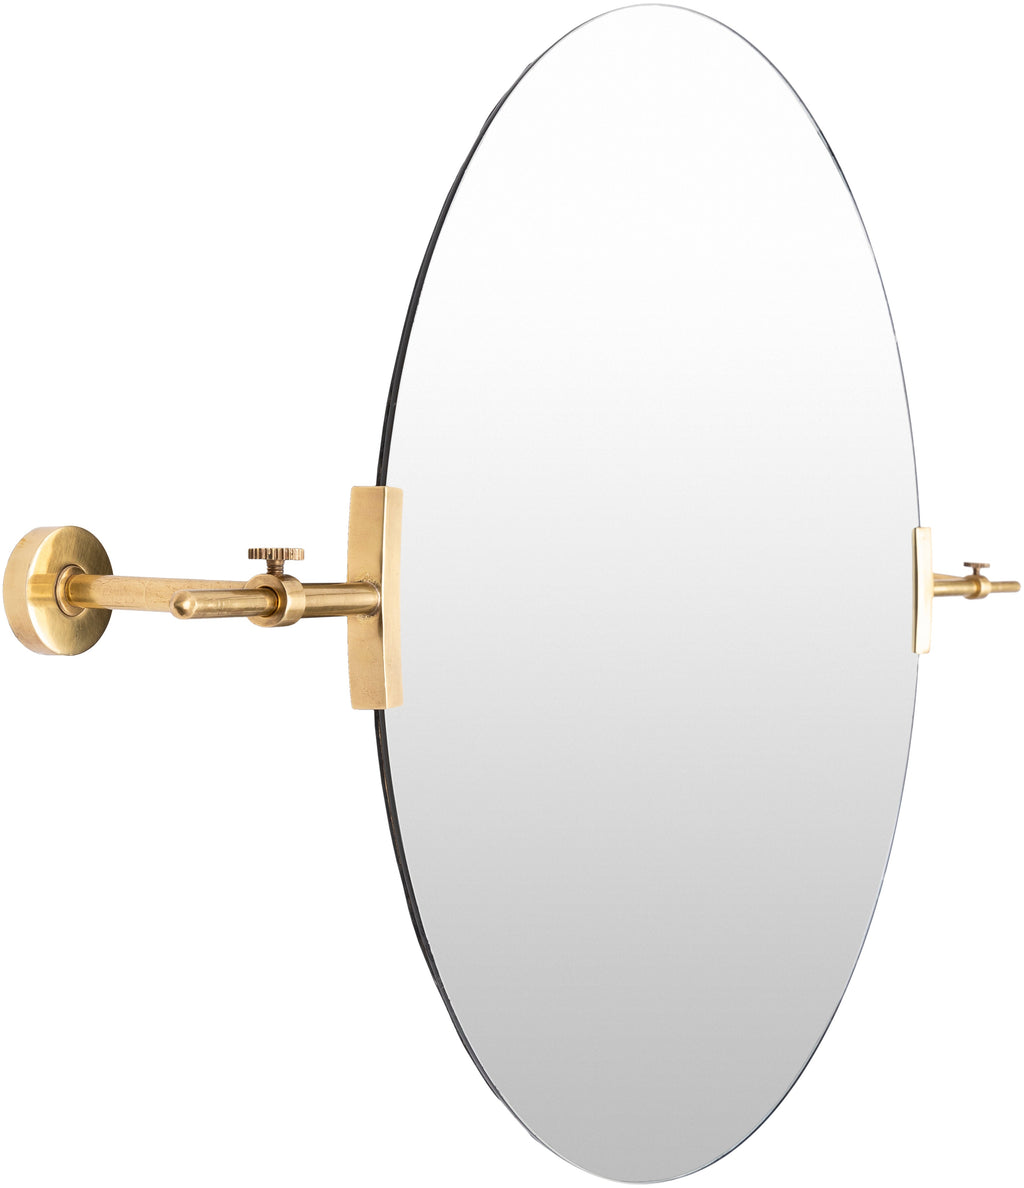 Anastasya Brass Gold Mirror 2'10"H x 2'0"W Round